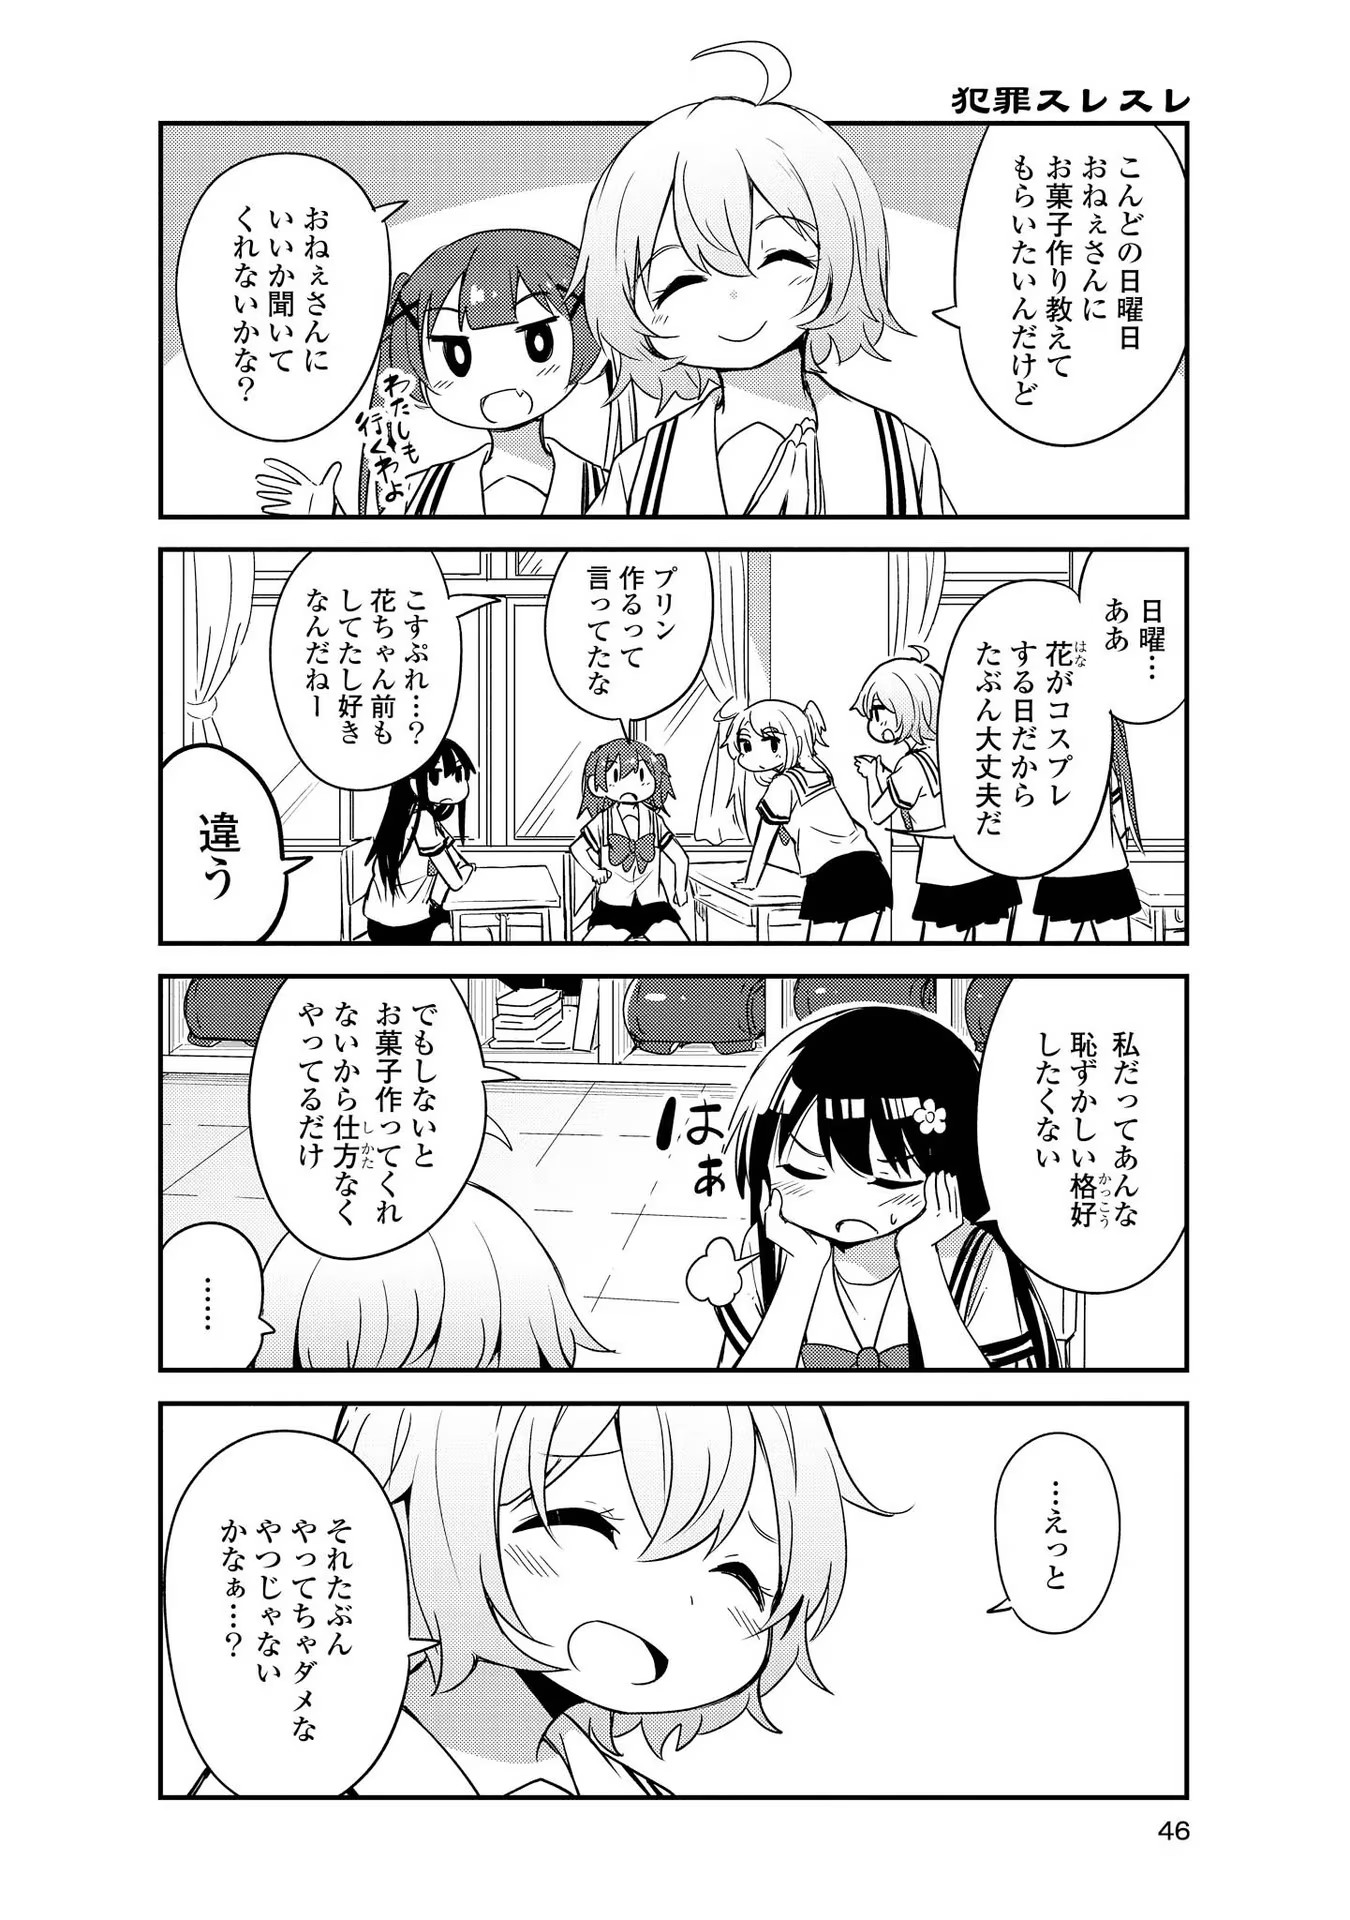 Watashi ni Tenshi ga Maiorita! - Chapter 24 - Page 2